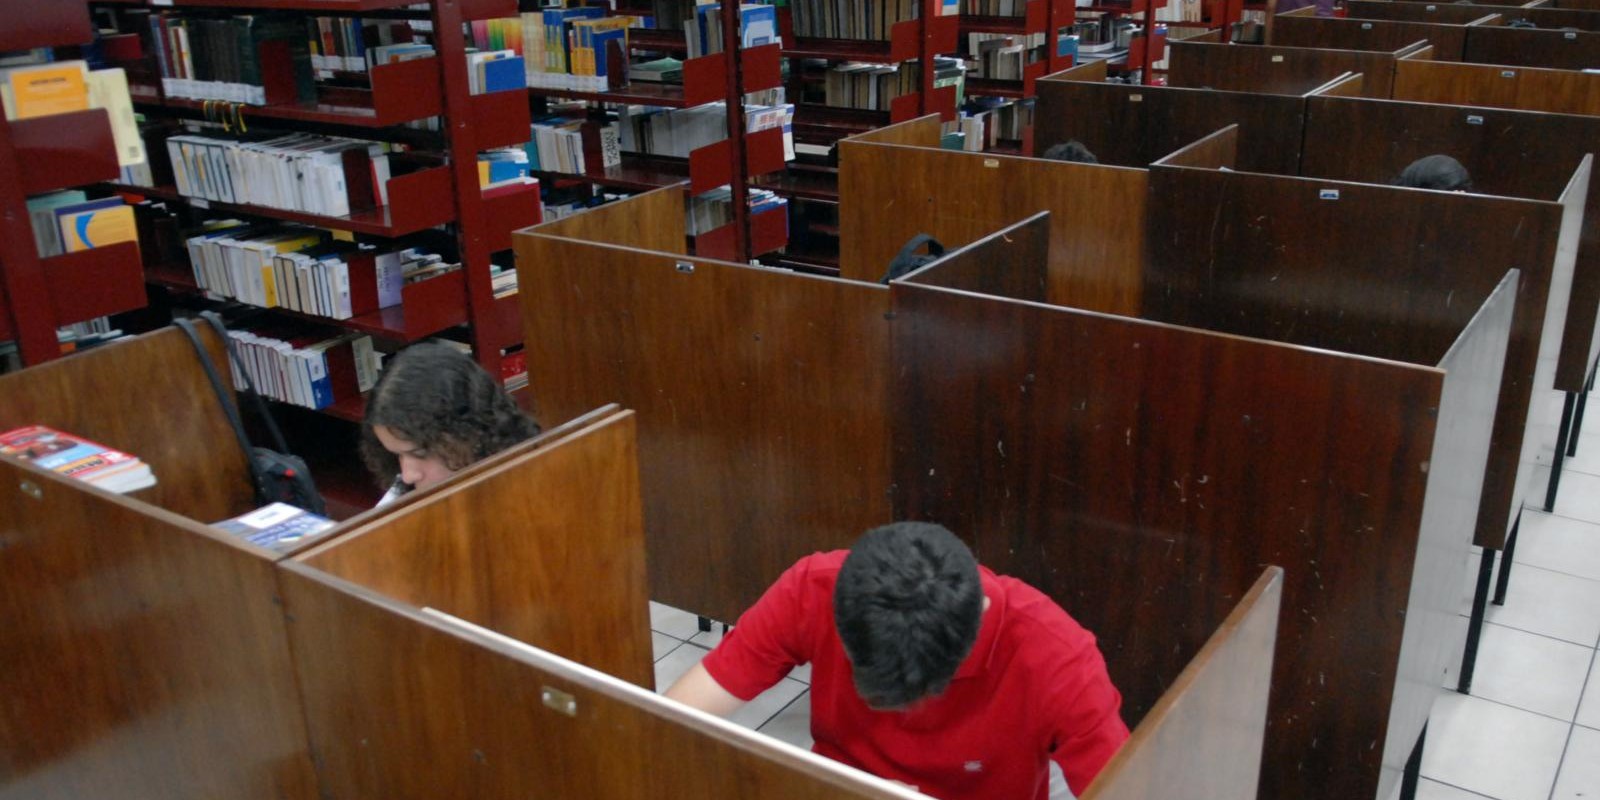 Falta de bibliotecas públicas no Brasil pode desestimular a leitura - Conexão - Canal Futura